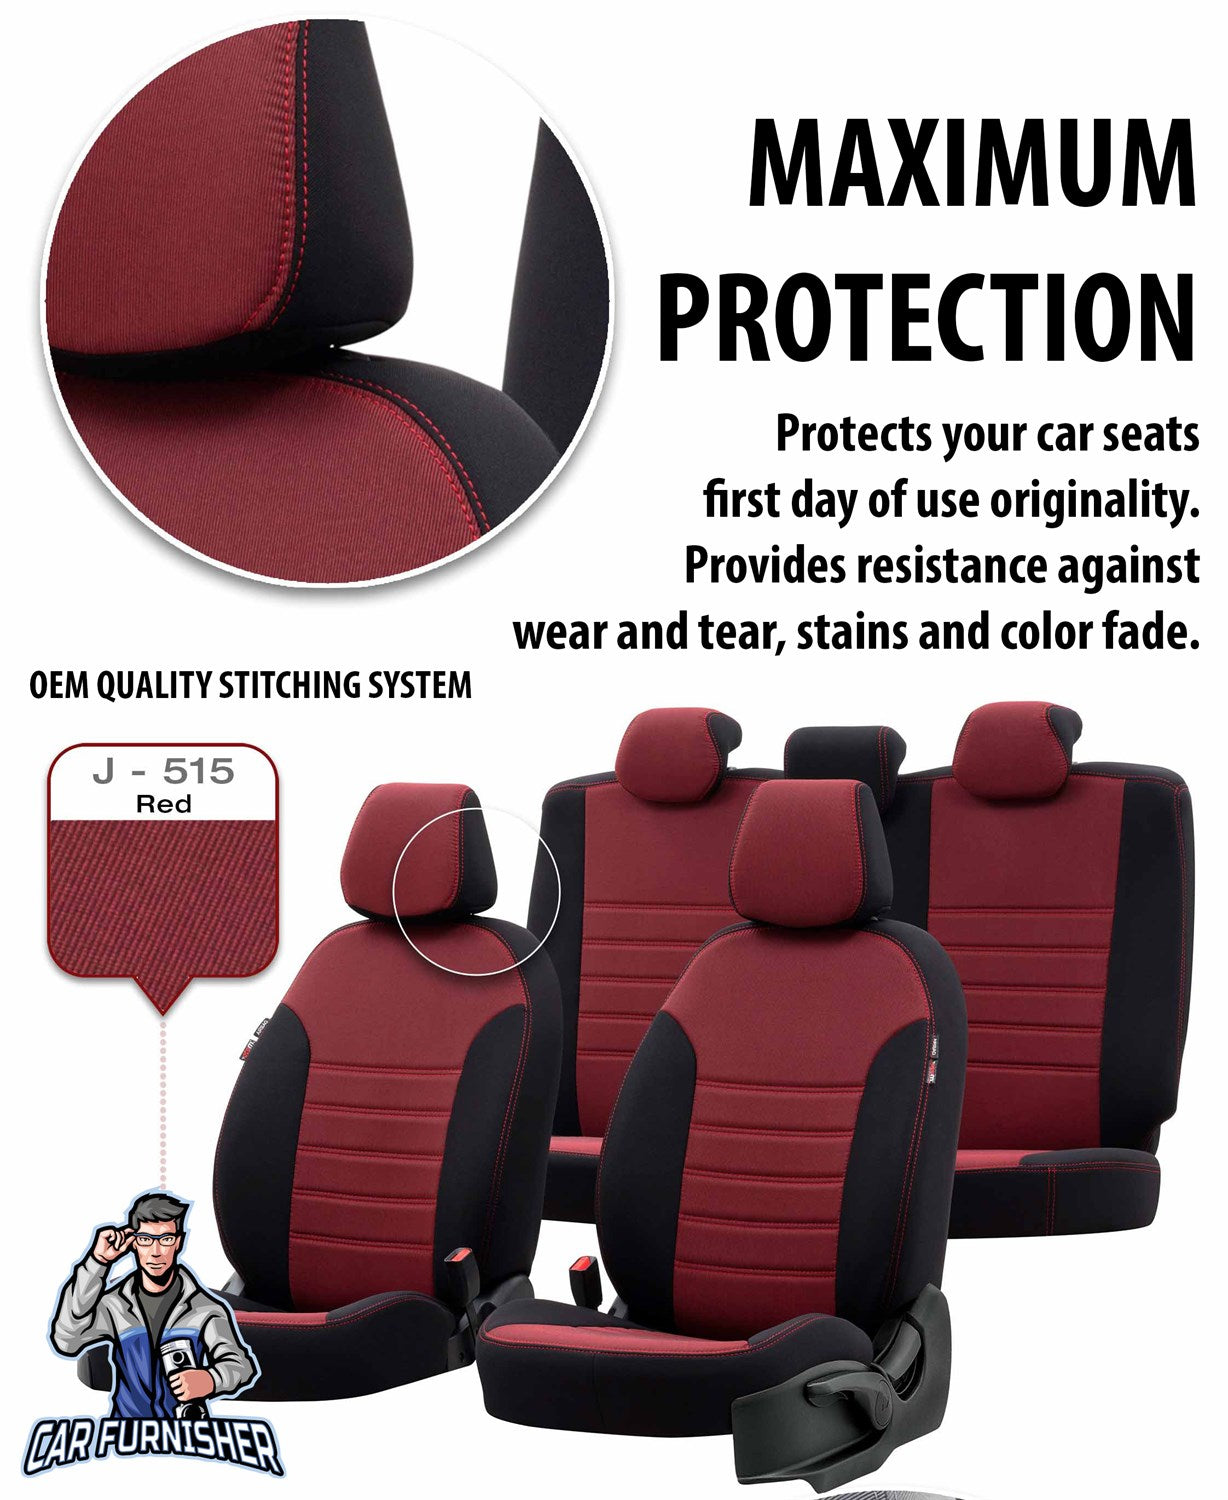 Toyota CHR Seat Cover Original Jacquard Design Red Jacquard Fabric